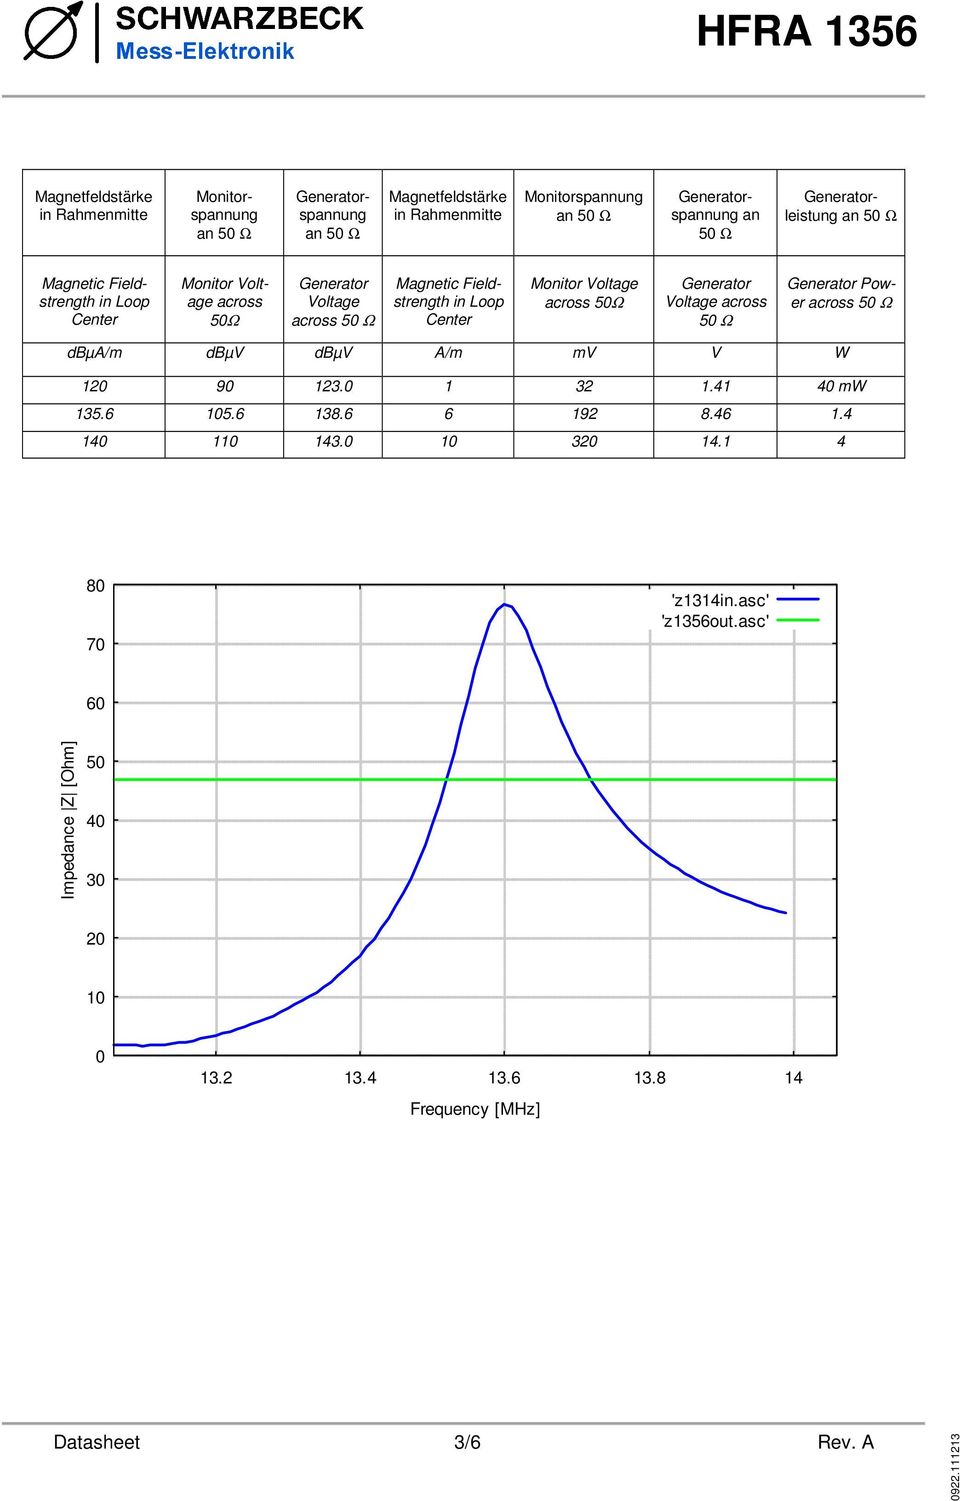 Monitor Voltage across 50Ω Generator Voltage across 50 Ω Generator Power across 50 Ω dbµa/m dbµv dbµv A/m mv V W 120 90 123.0 1 32 1.41 40 mw 135.6 105.